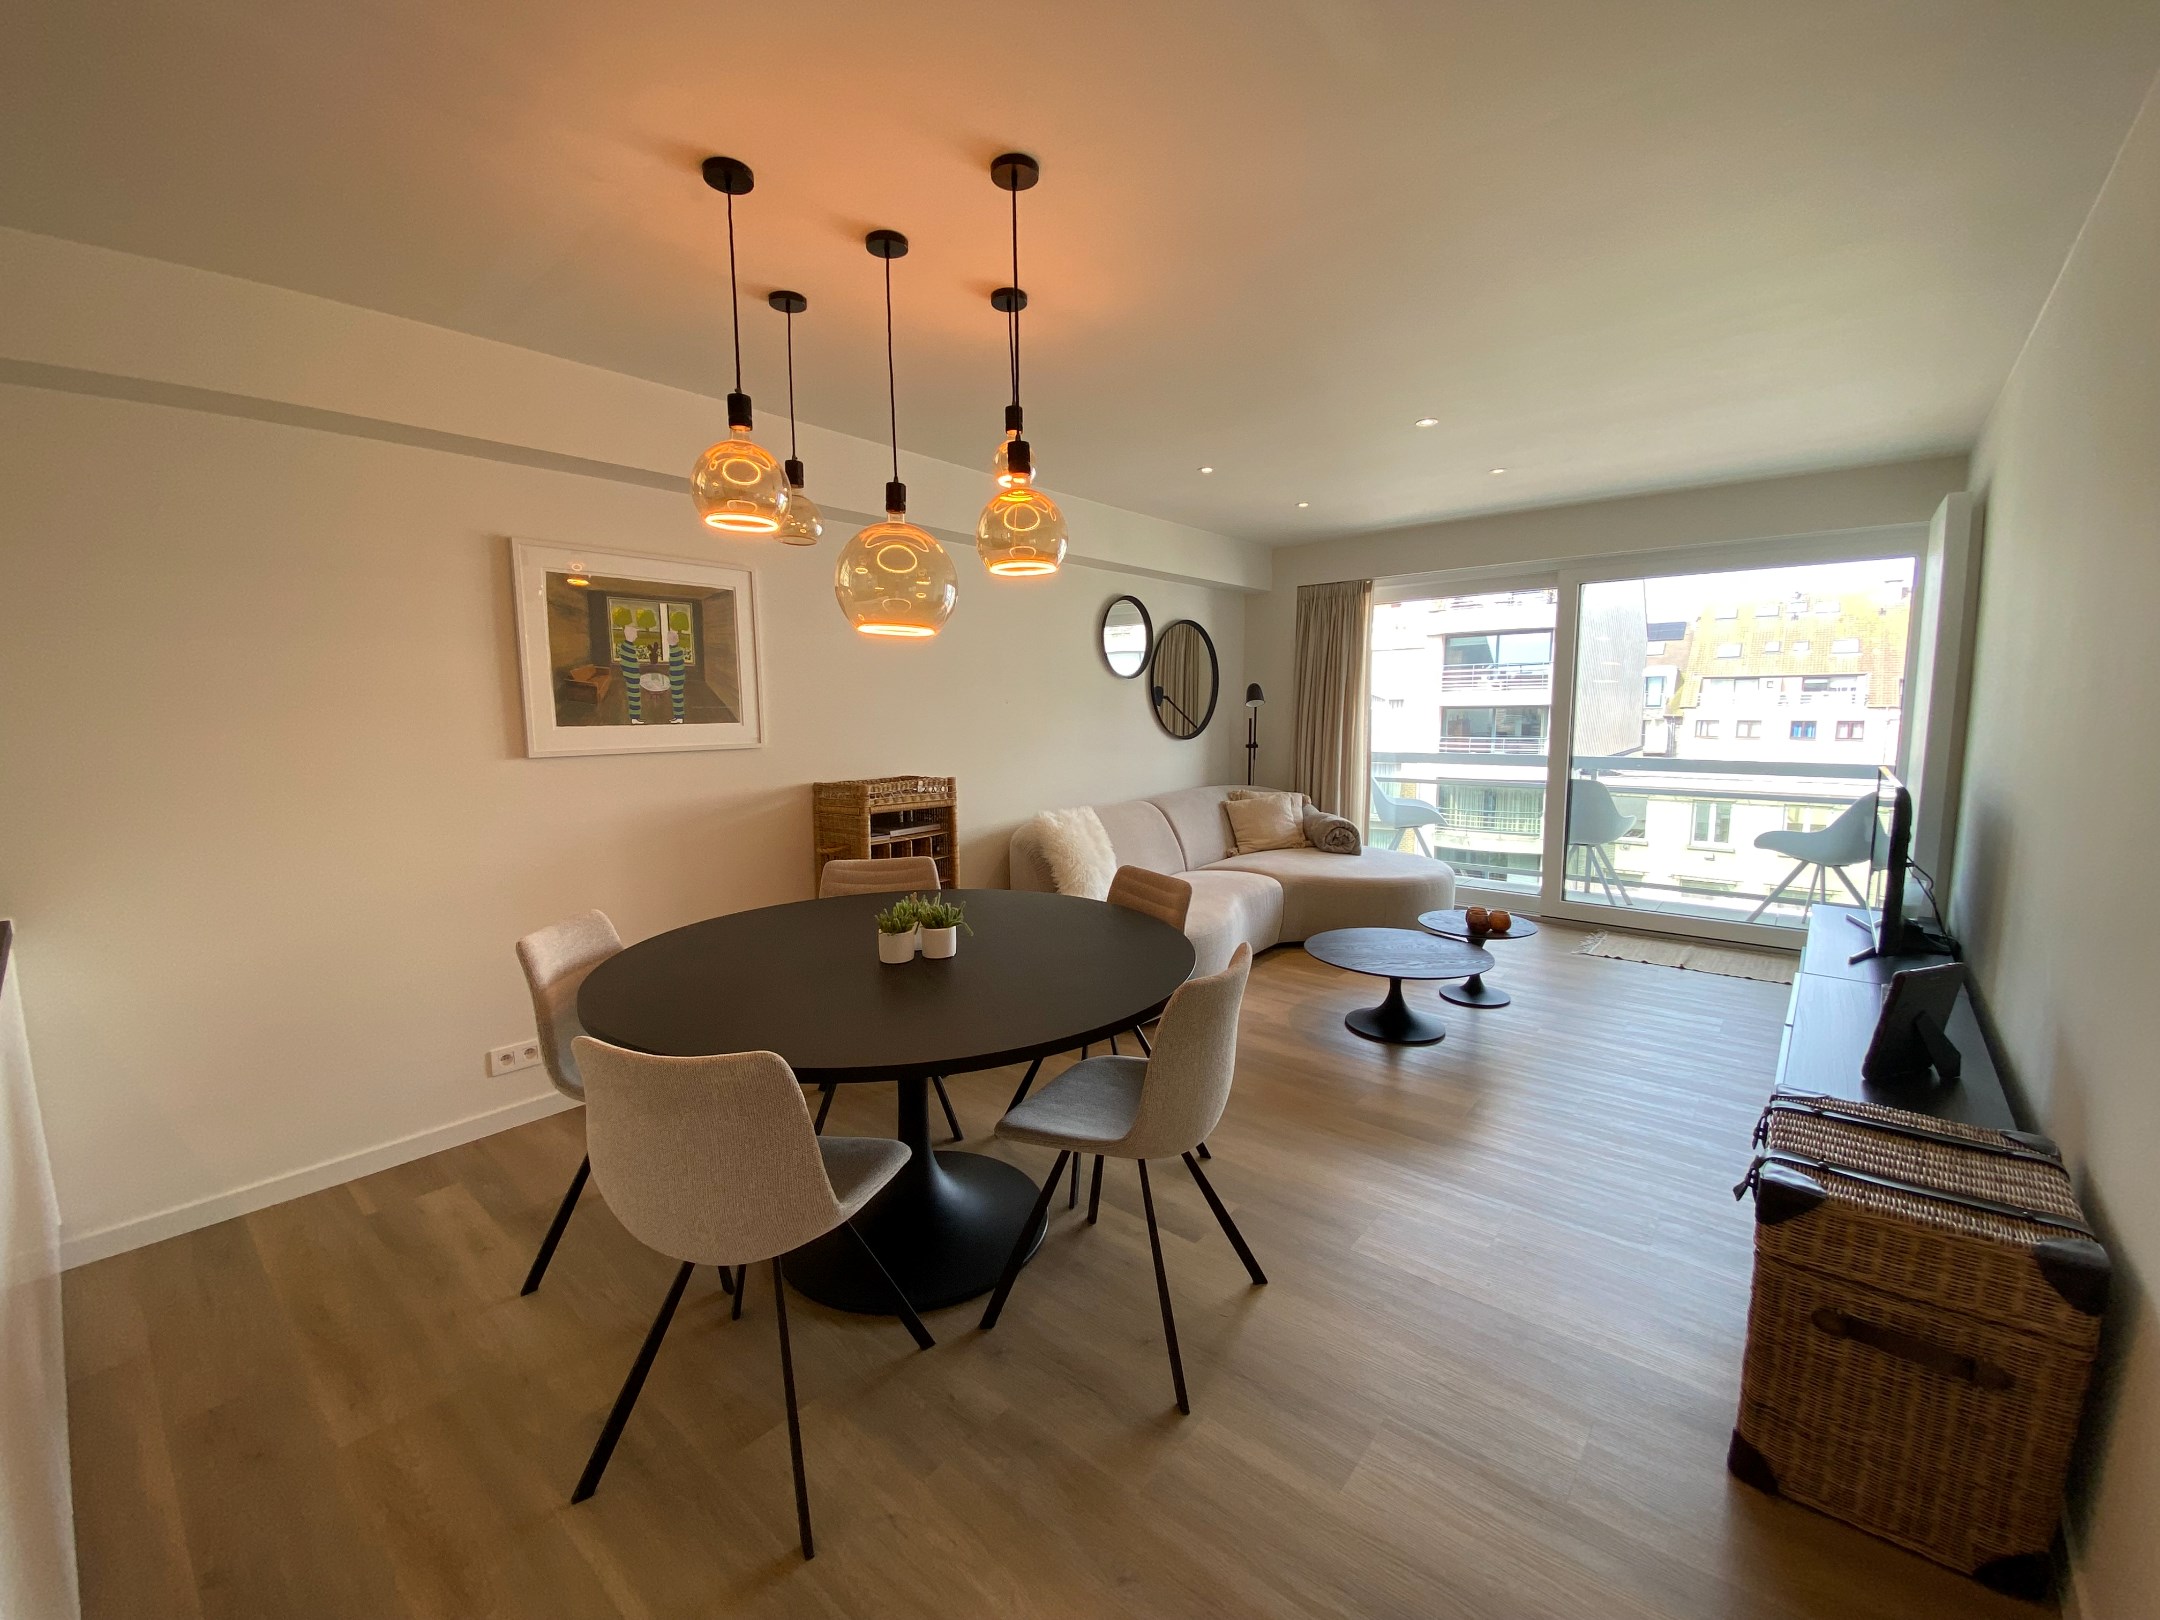 GEMEUBELD - Modern ingericht appartement met 2 volwaardige slaapkamers gelegen in de Lippenslaan. foto 3